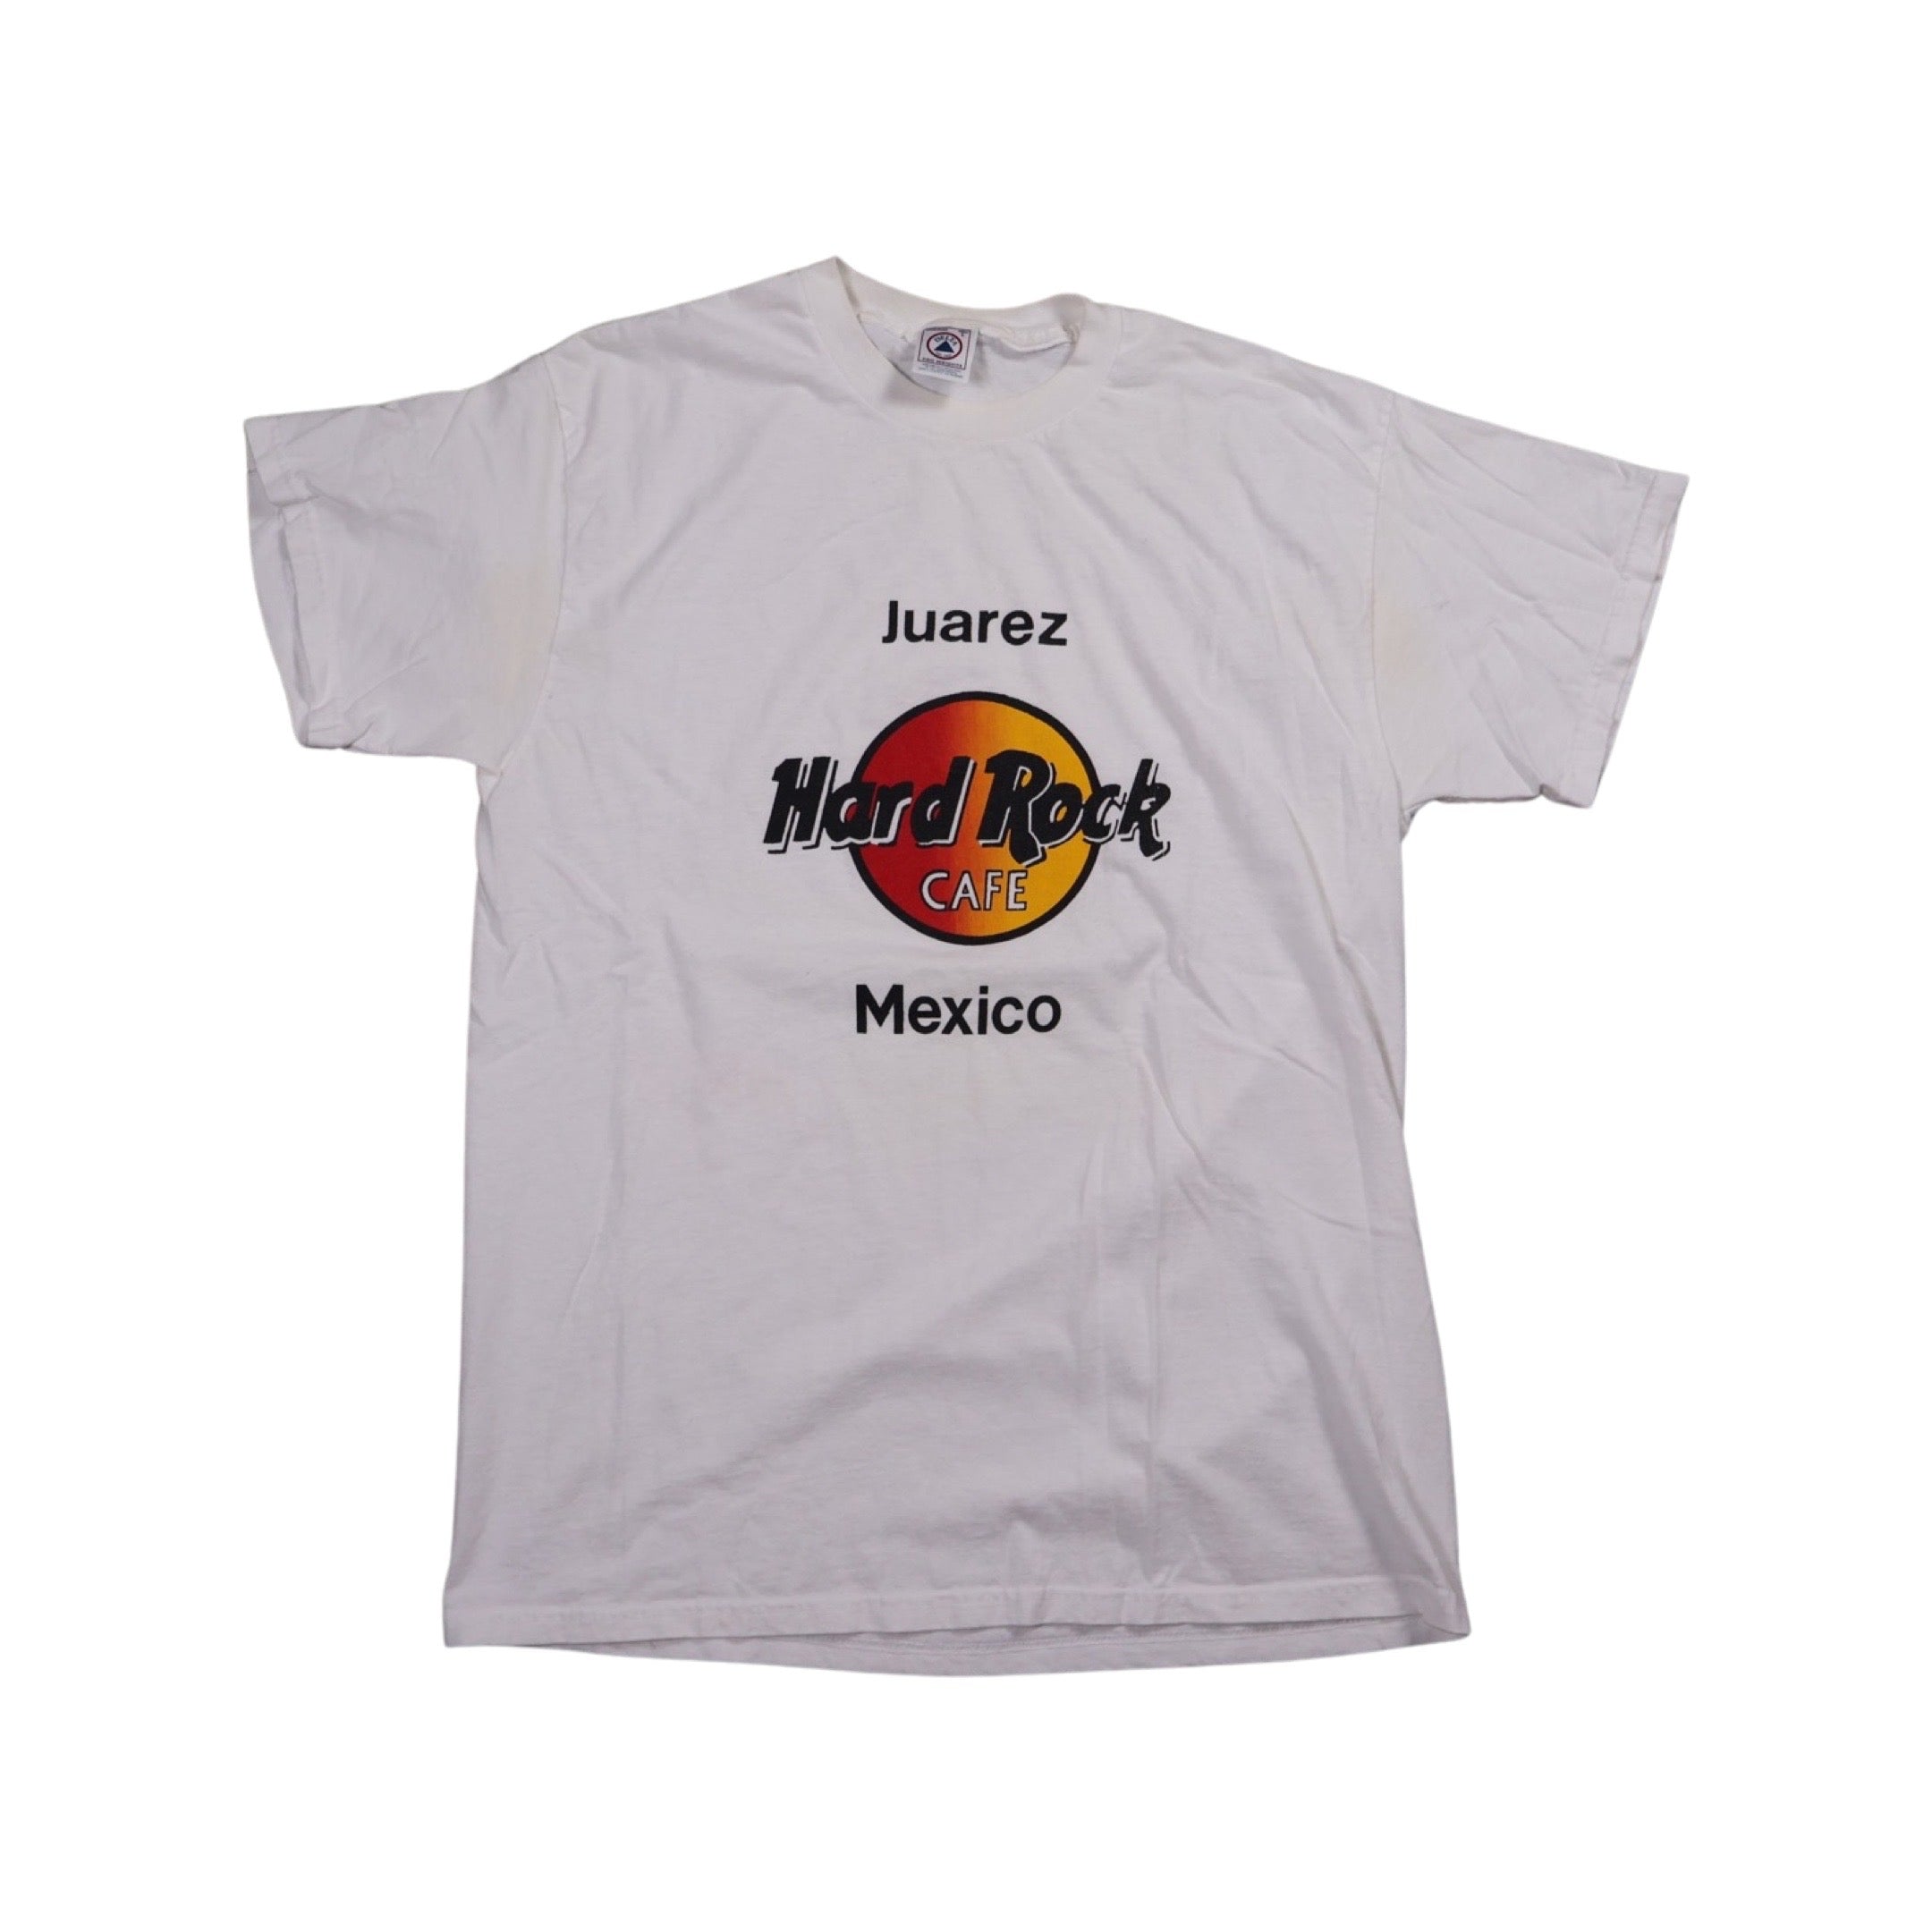 Hard Rock Cafe Juarez Mexico 90s T-Shirt (XL)